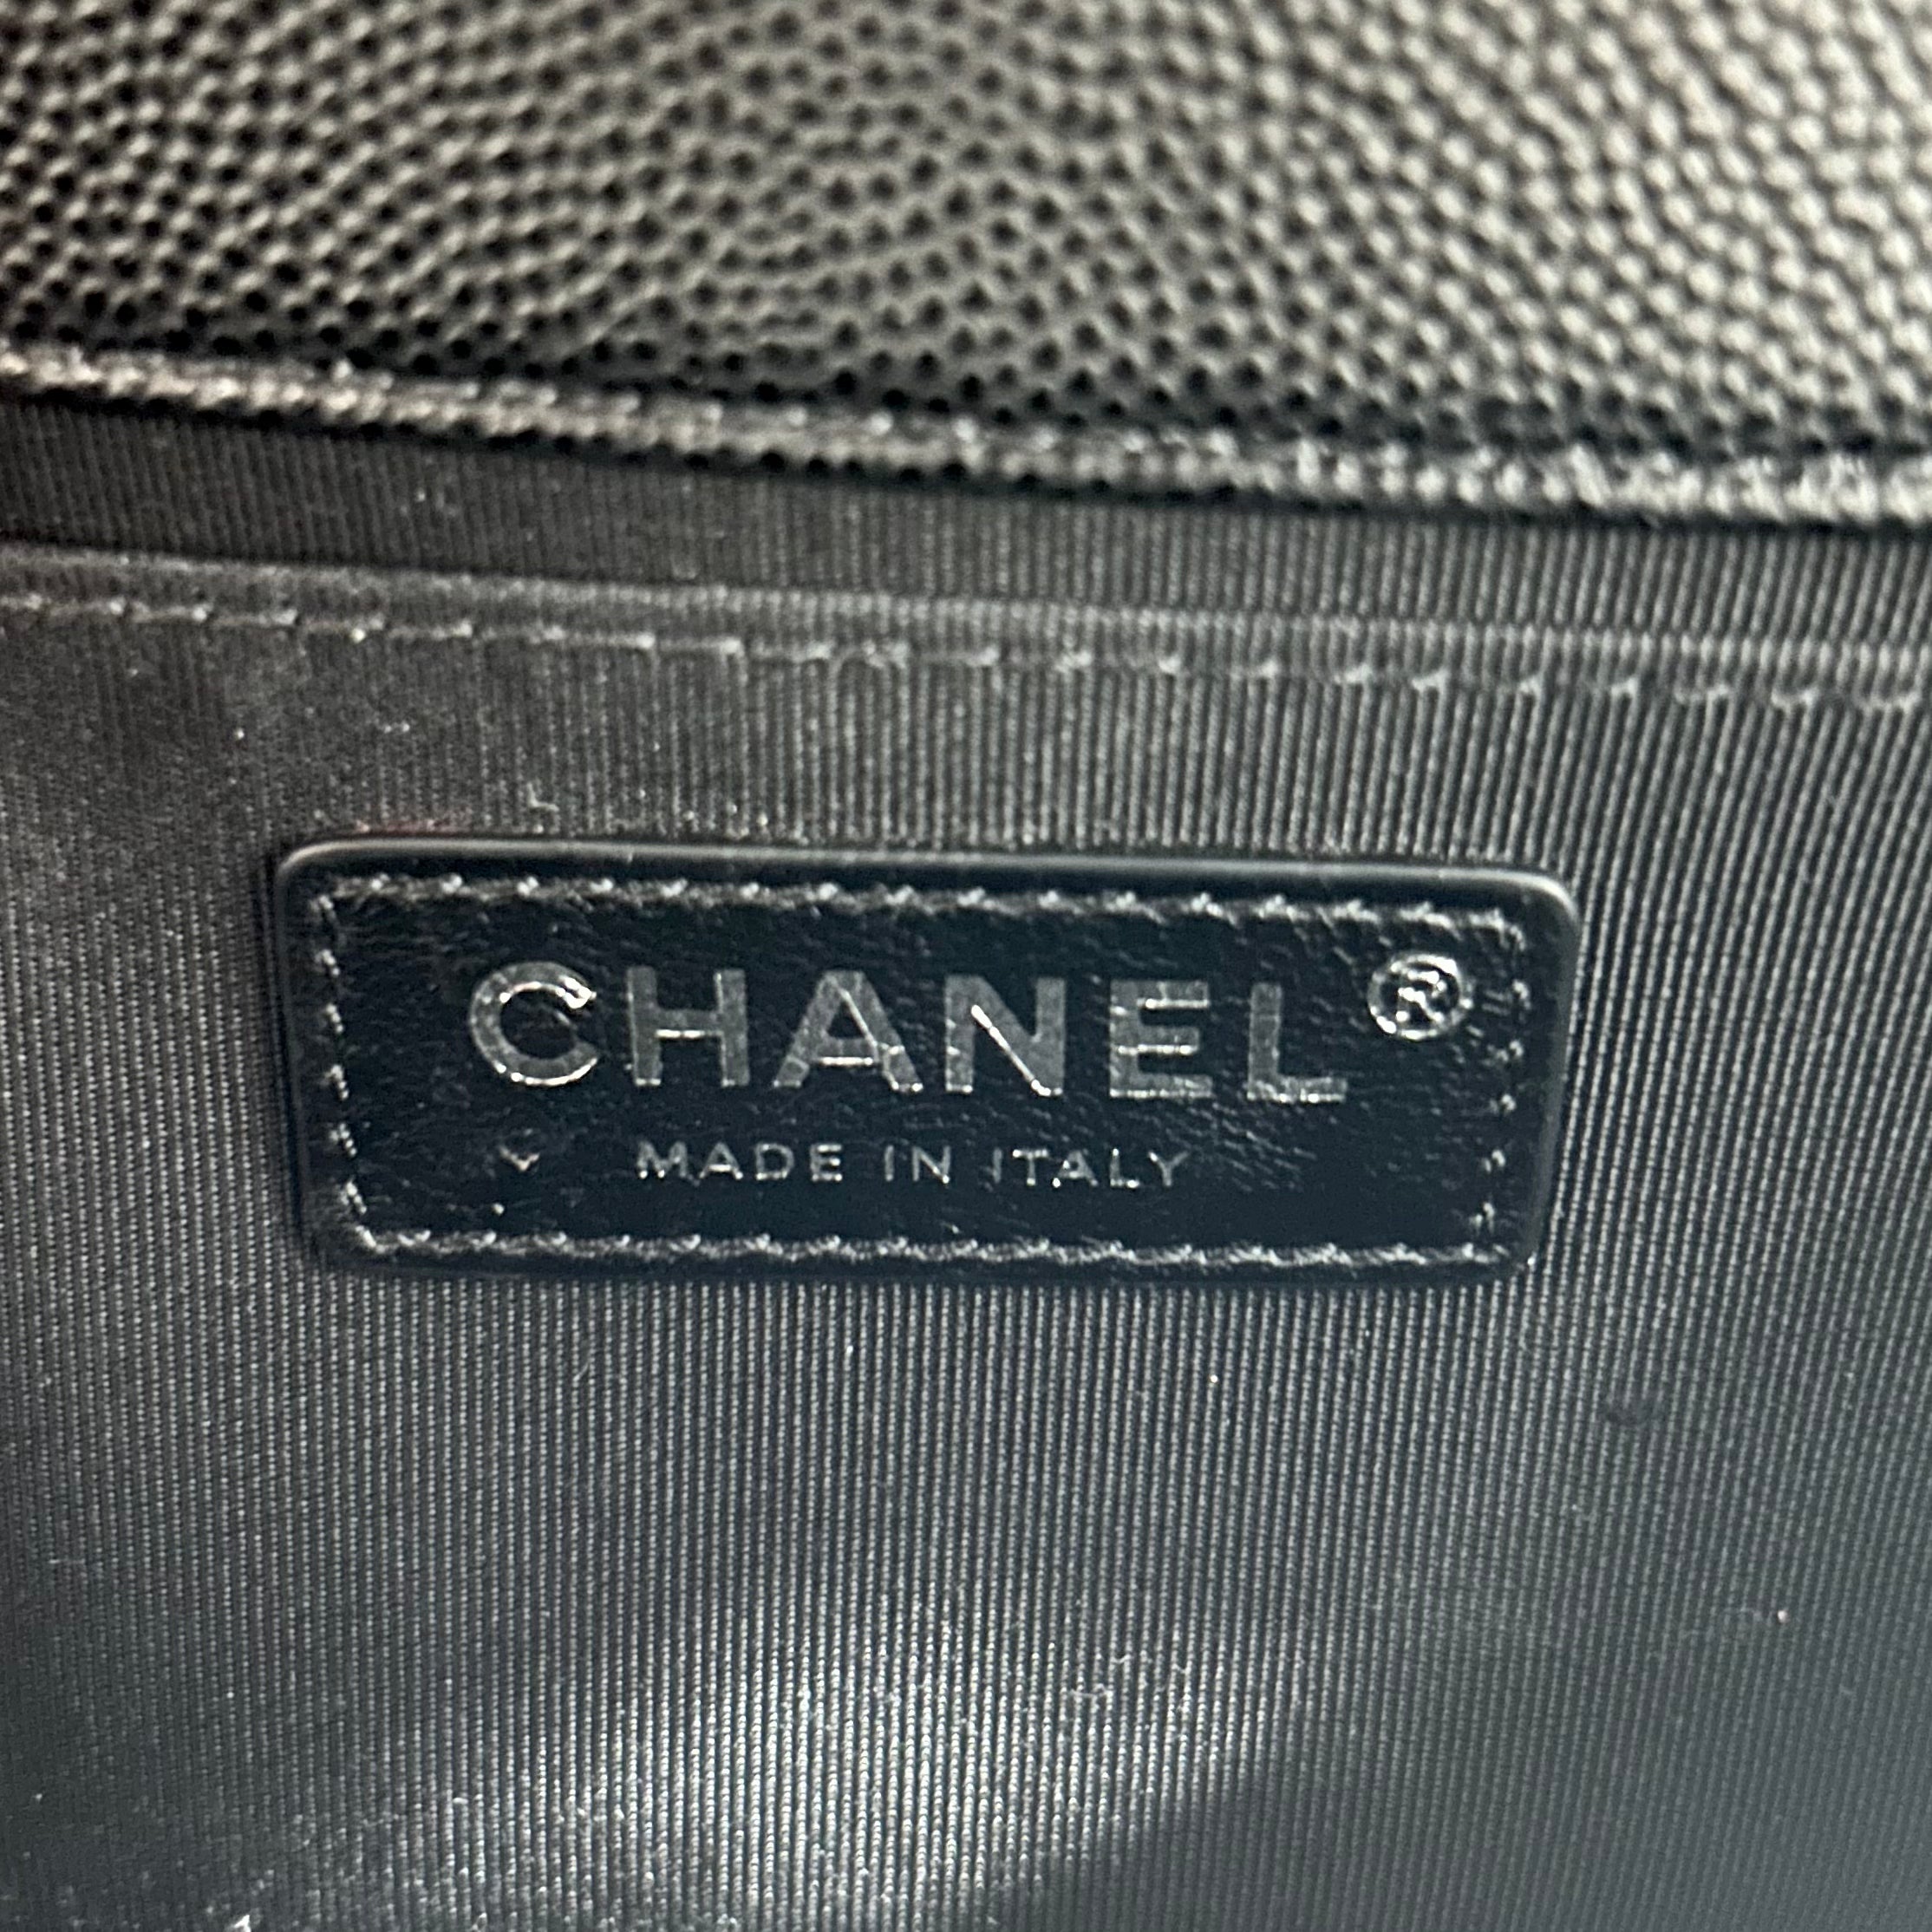 Chanel Black Medium Boy Bag